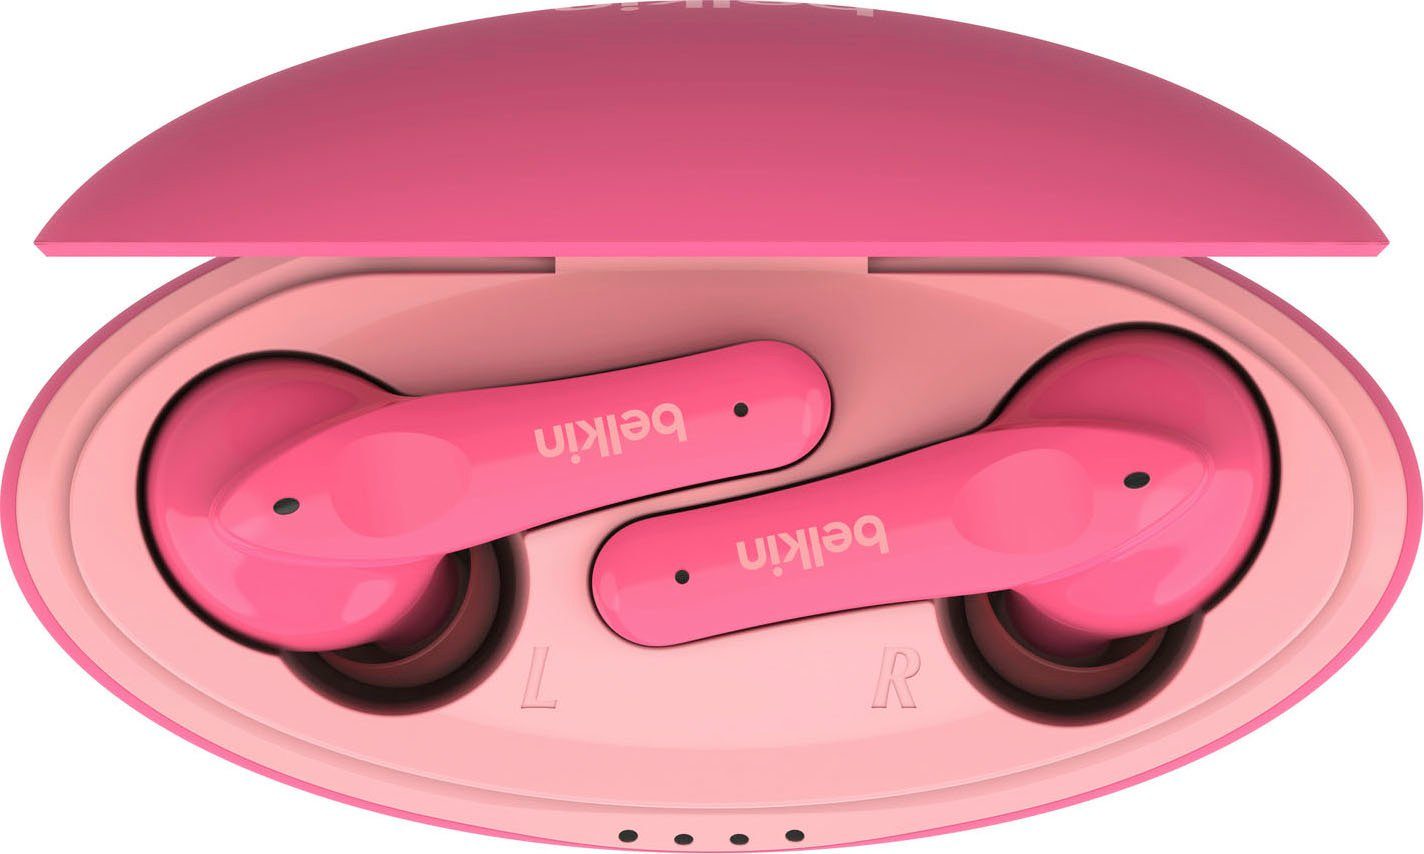 NANO 85 - In-Ear-Kopfhörer begrenzt; (auf am Kopfhörer) dB SOUNDFORM Kopfhörer Kinder Belkin wireless pink